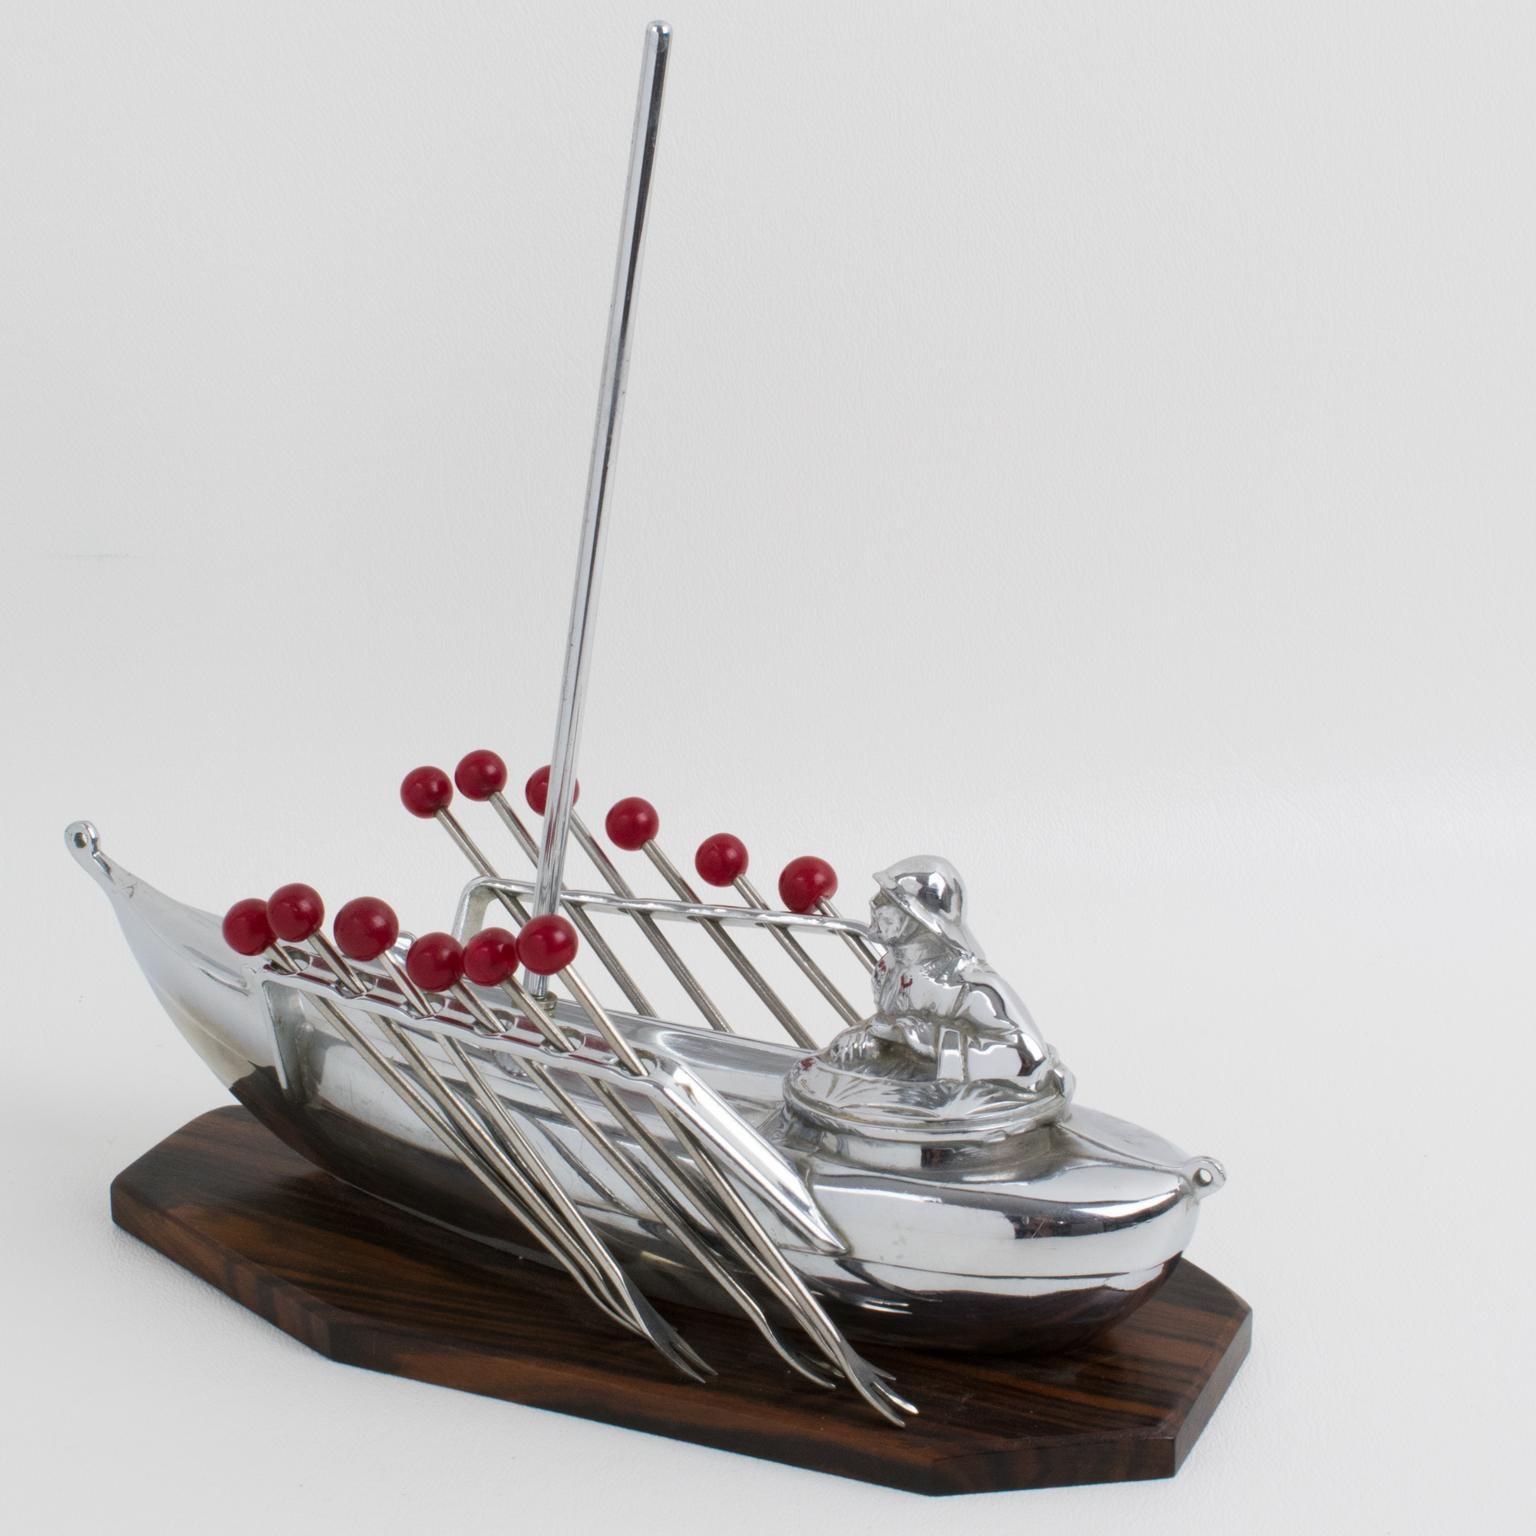 Ce superbe set de pics à cocktail français représente un bateau miniature avec un marin. Douze fourchettes avec un embout en bakélite rouge peuvent être retirées de chaque côté du voilier et être utilisées comme pics à cocktail pour les Manhattans,